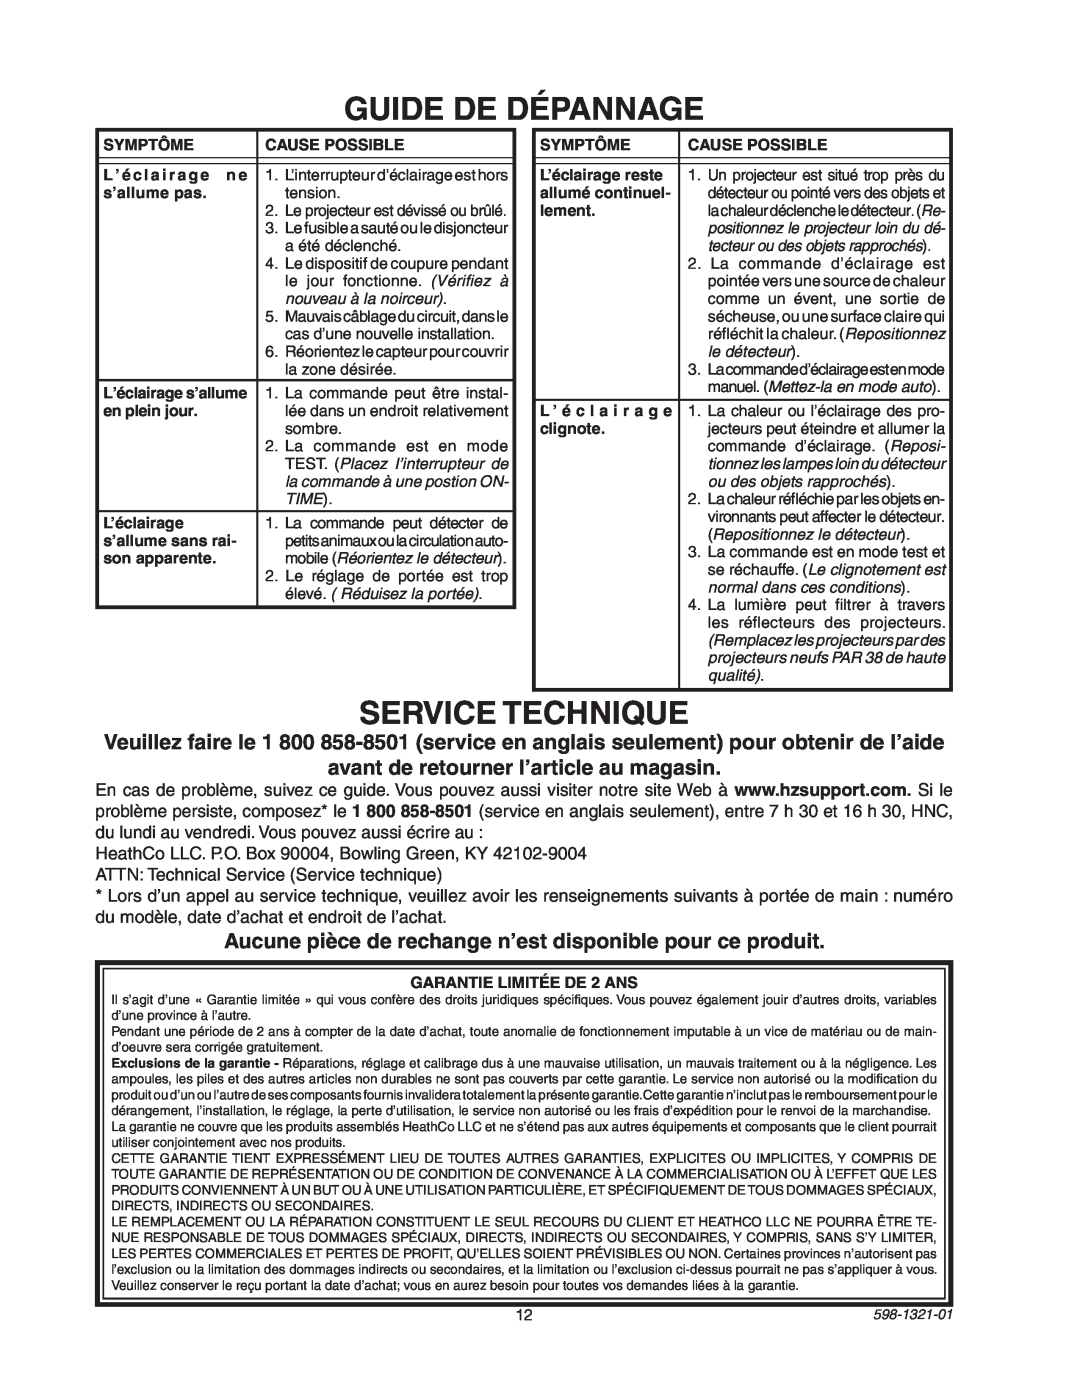 Heath Zenith BL-1800 manual Guide De Dépannage, Service Technique 